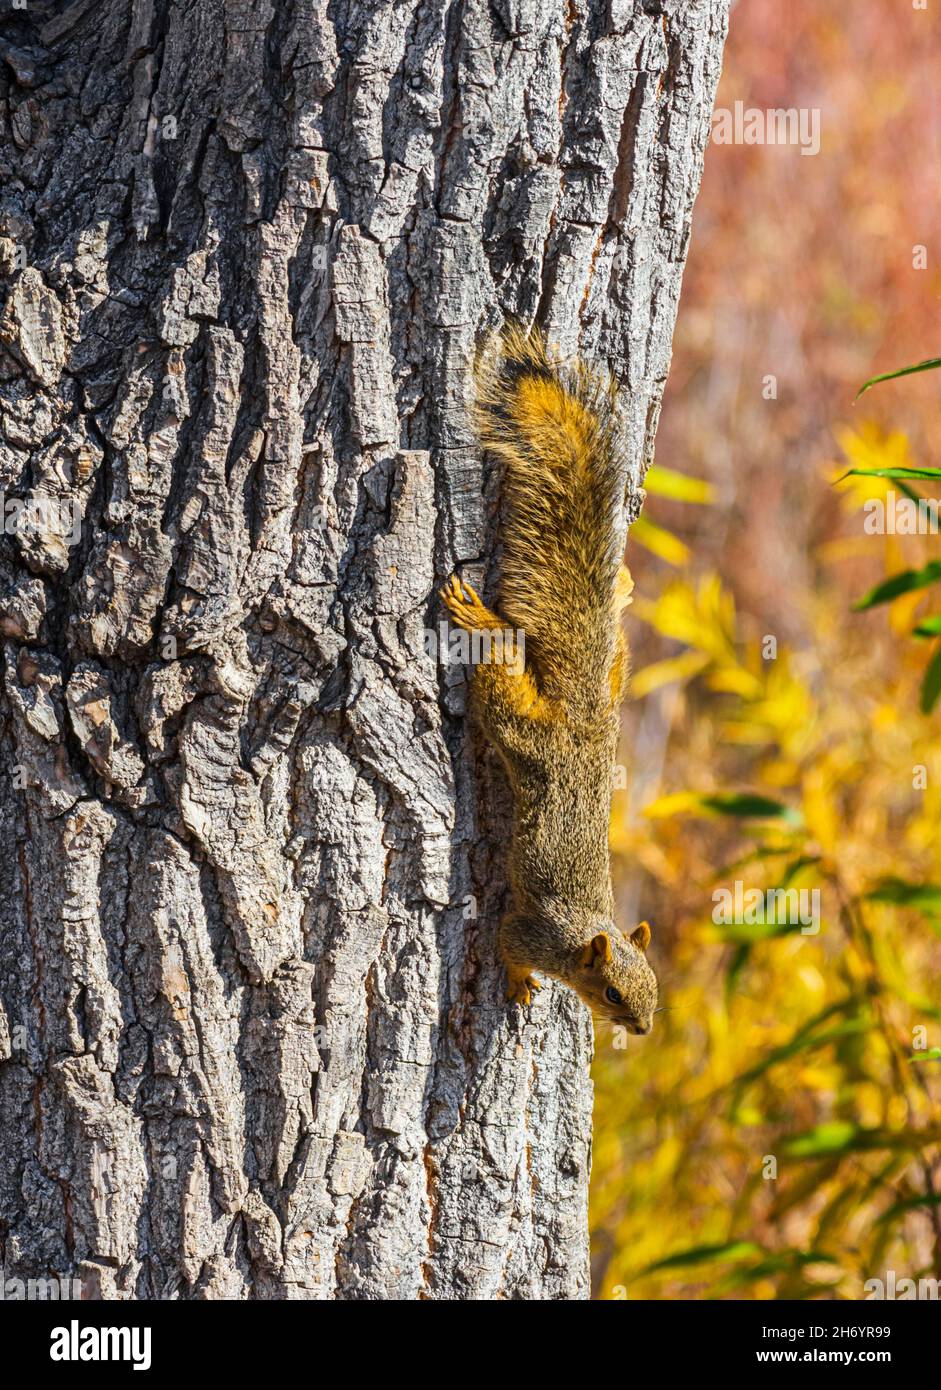 Eastern Fox Squirrel (Sciurus niger) si aggrappa alla corteccia grezza di Plains Cottonwood Tree & è curioso & allerta al fotografo, Castle Rock Colorado USA. Foto Stock